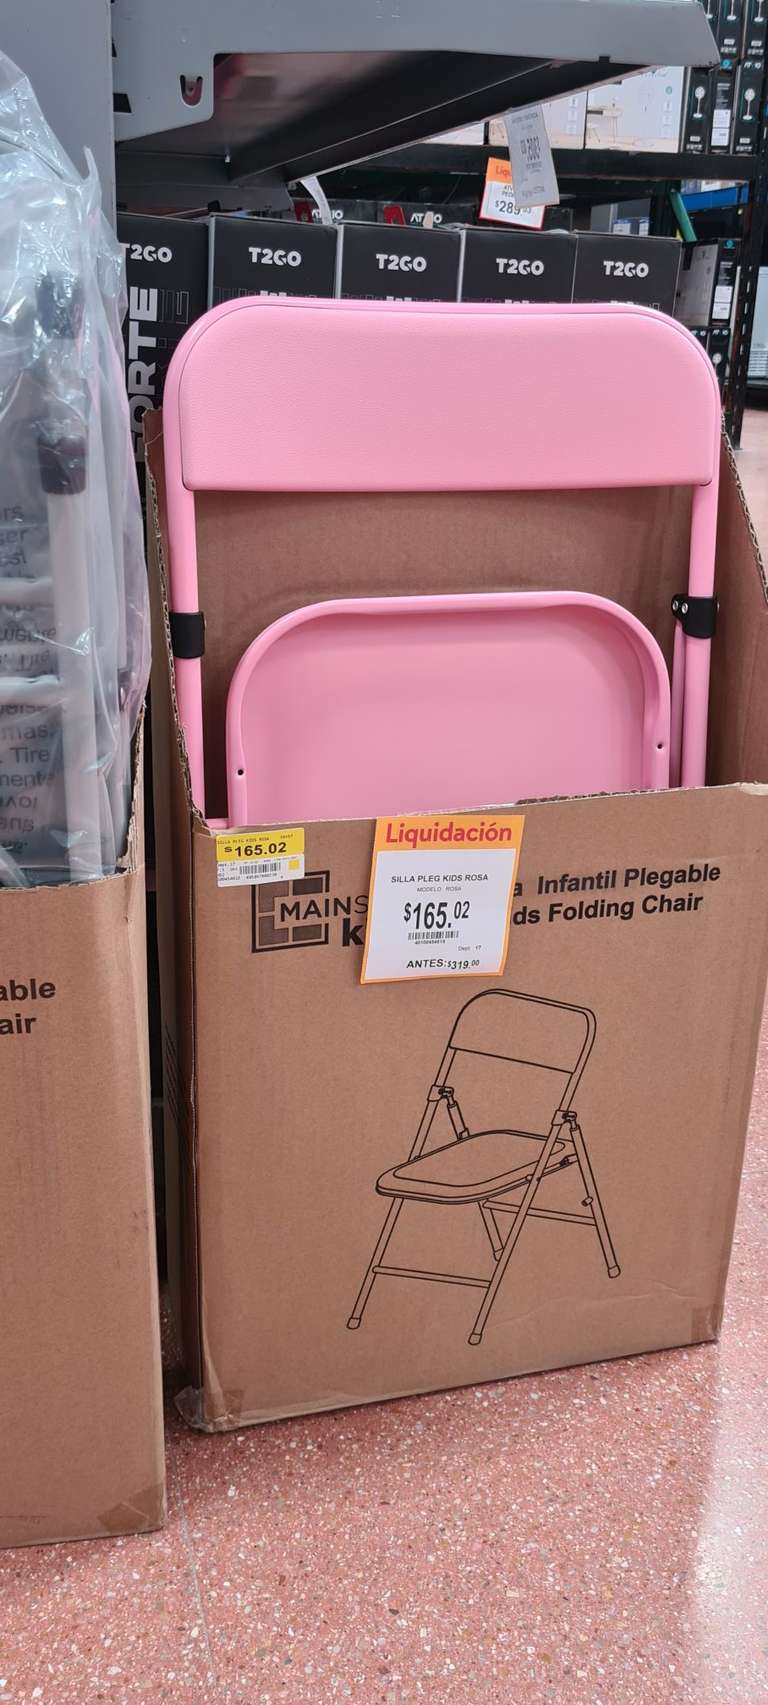 Walmart: Silla pleg kid rosa